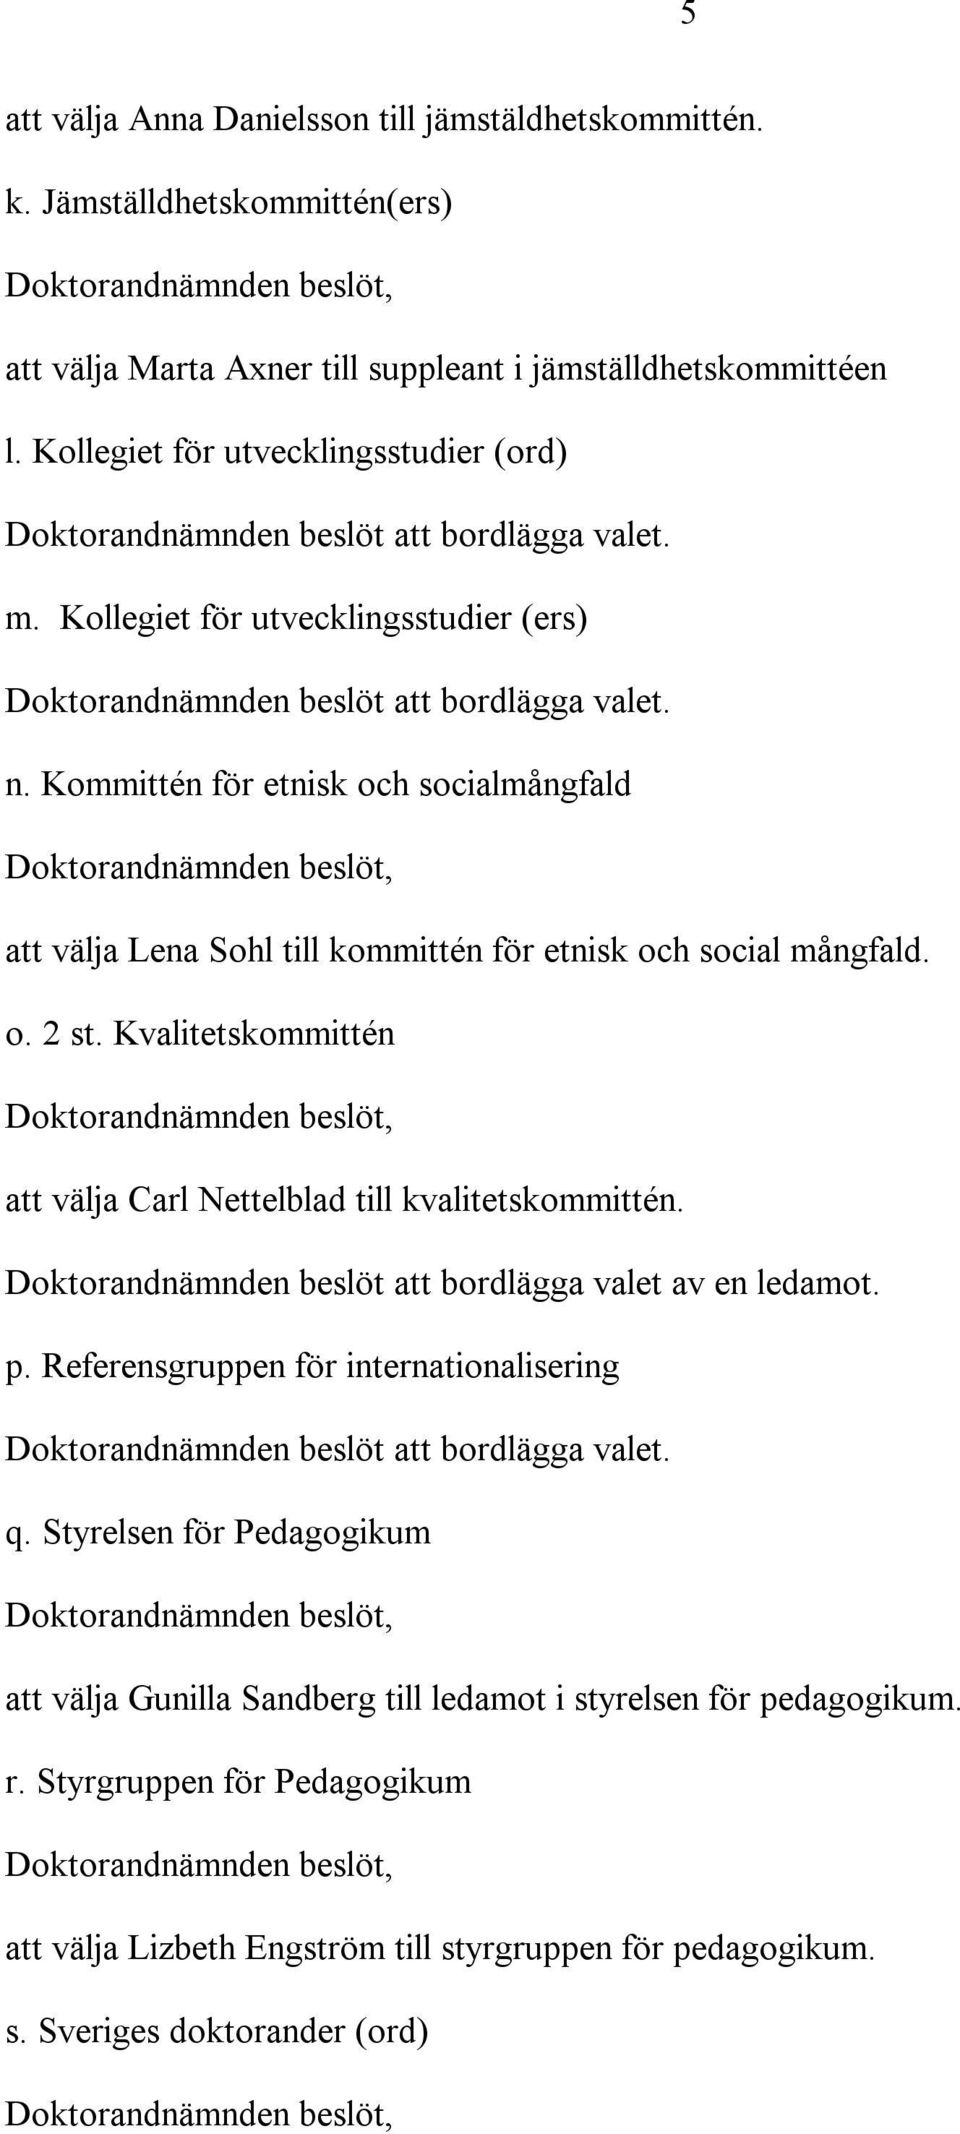 Kommittén för etnisk och socialmångfald att välja Lena Sohl till kommittén för etnisk och social mångfald. o. 2 st. Kvalitetskommittén att välja Carl Nettelblad till kvalitetskommittén.